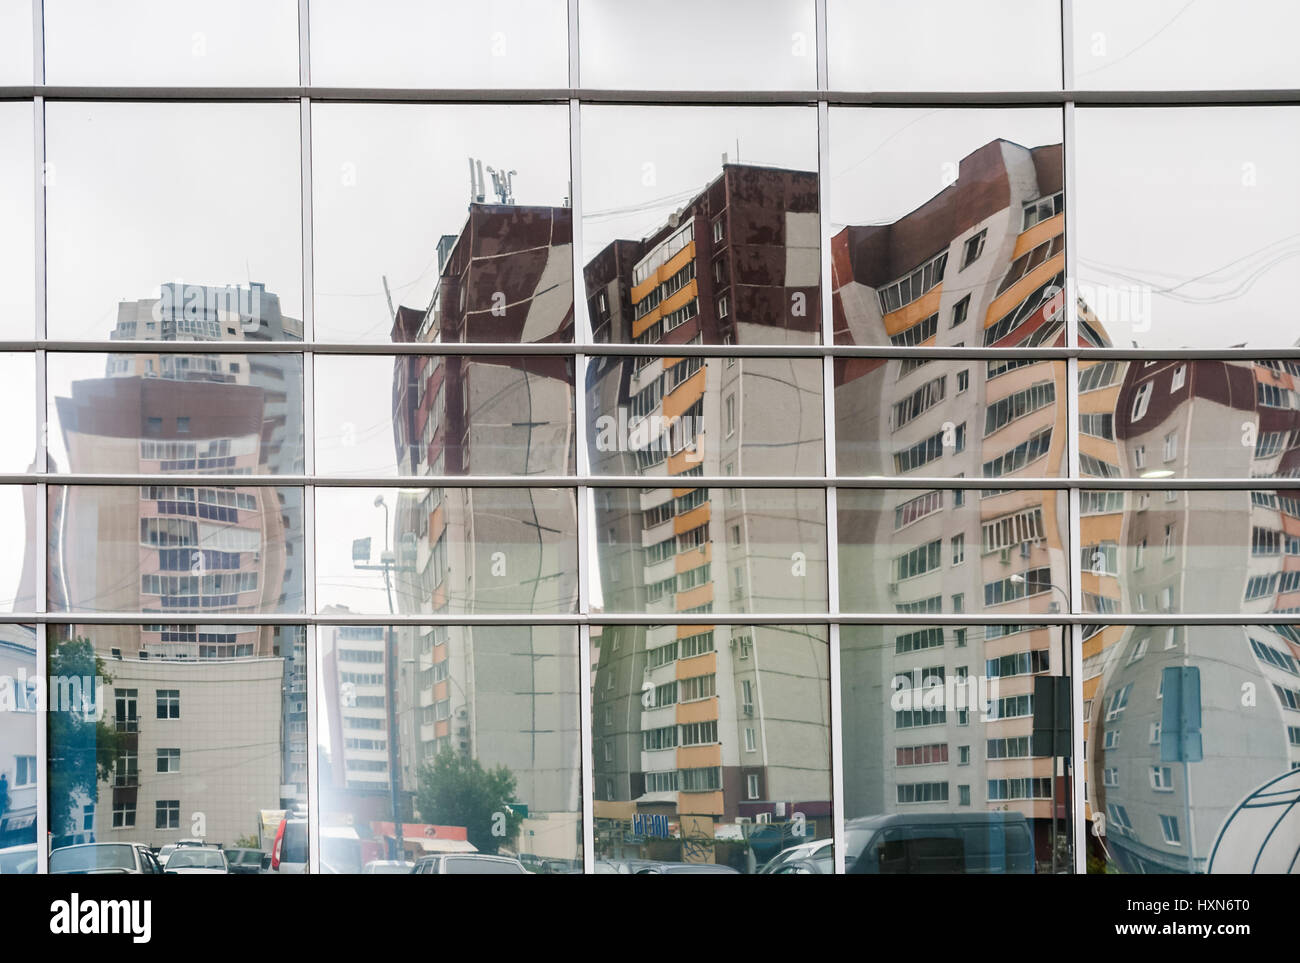 Verzerrtes Spiegelbild der mehrgeschossigen Wohnbau in Spiegeloberfläche der Verkleidung der Mall gegenüber beherbergt. Stockfoto